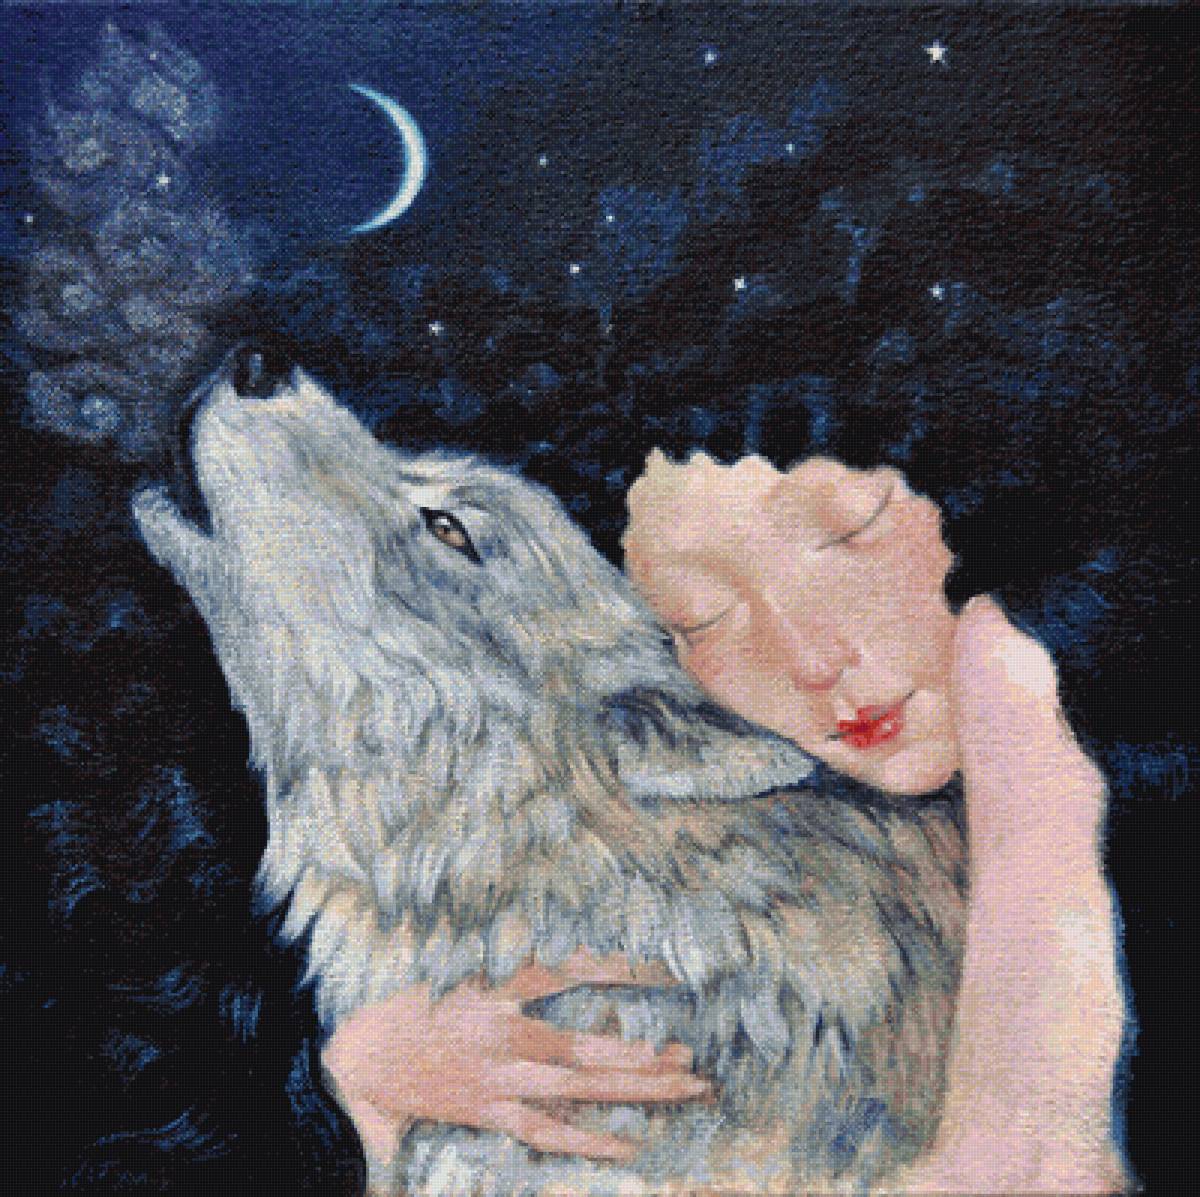 Обнимаю волка. Lucy Campbell картины. Художник Lucy Campbell черный лебедь. Волк обнимает девушку. Девочка обнимает волка.